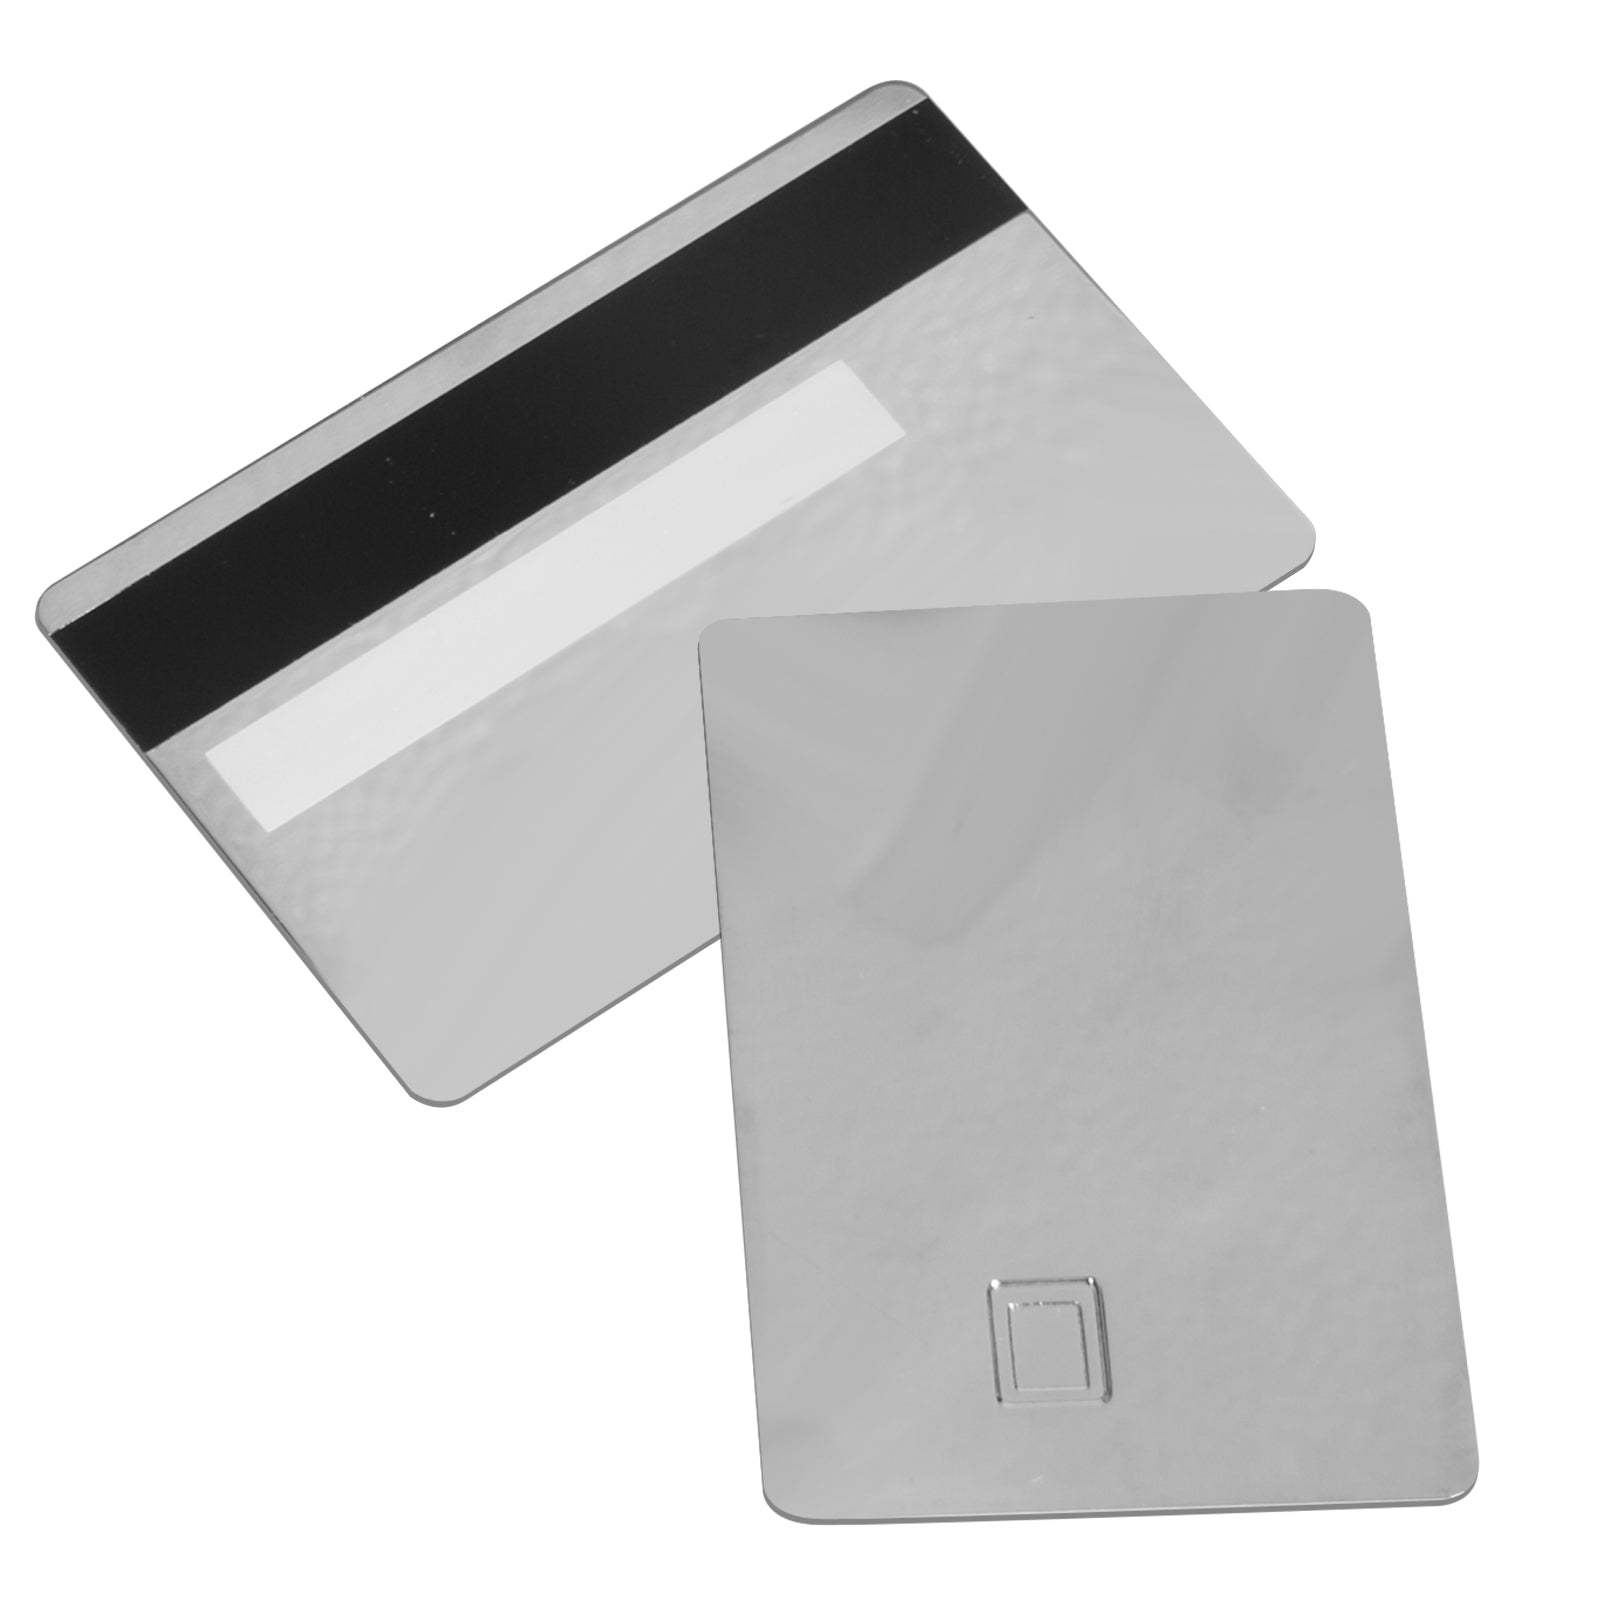 Carte de crédit vierge en acier inoxydable/laiton, métal mat, fente pour puce 4442 avec bande magnétique HiCo 3 pistes, 2 pièces